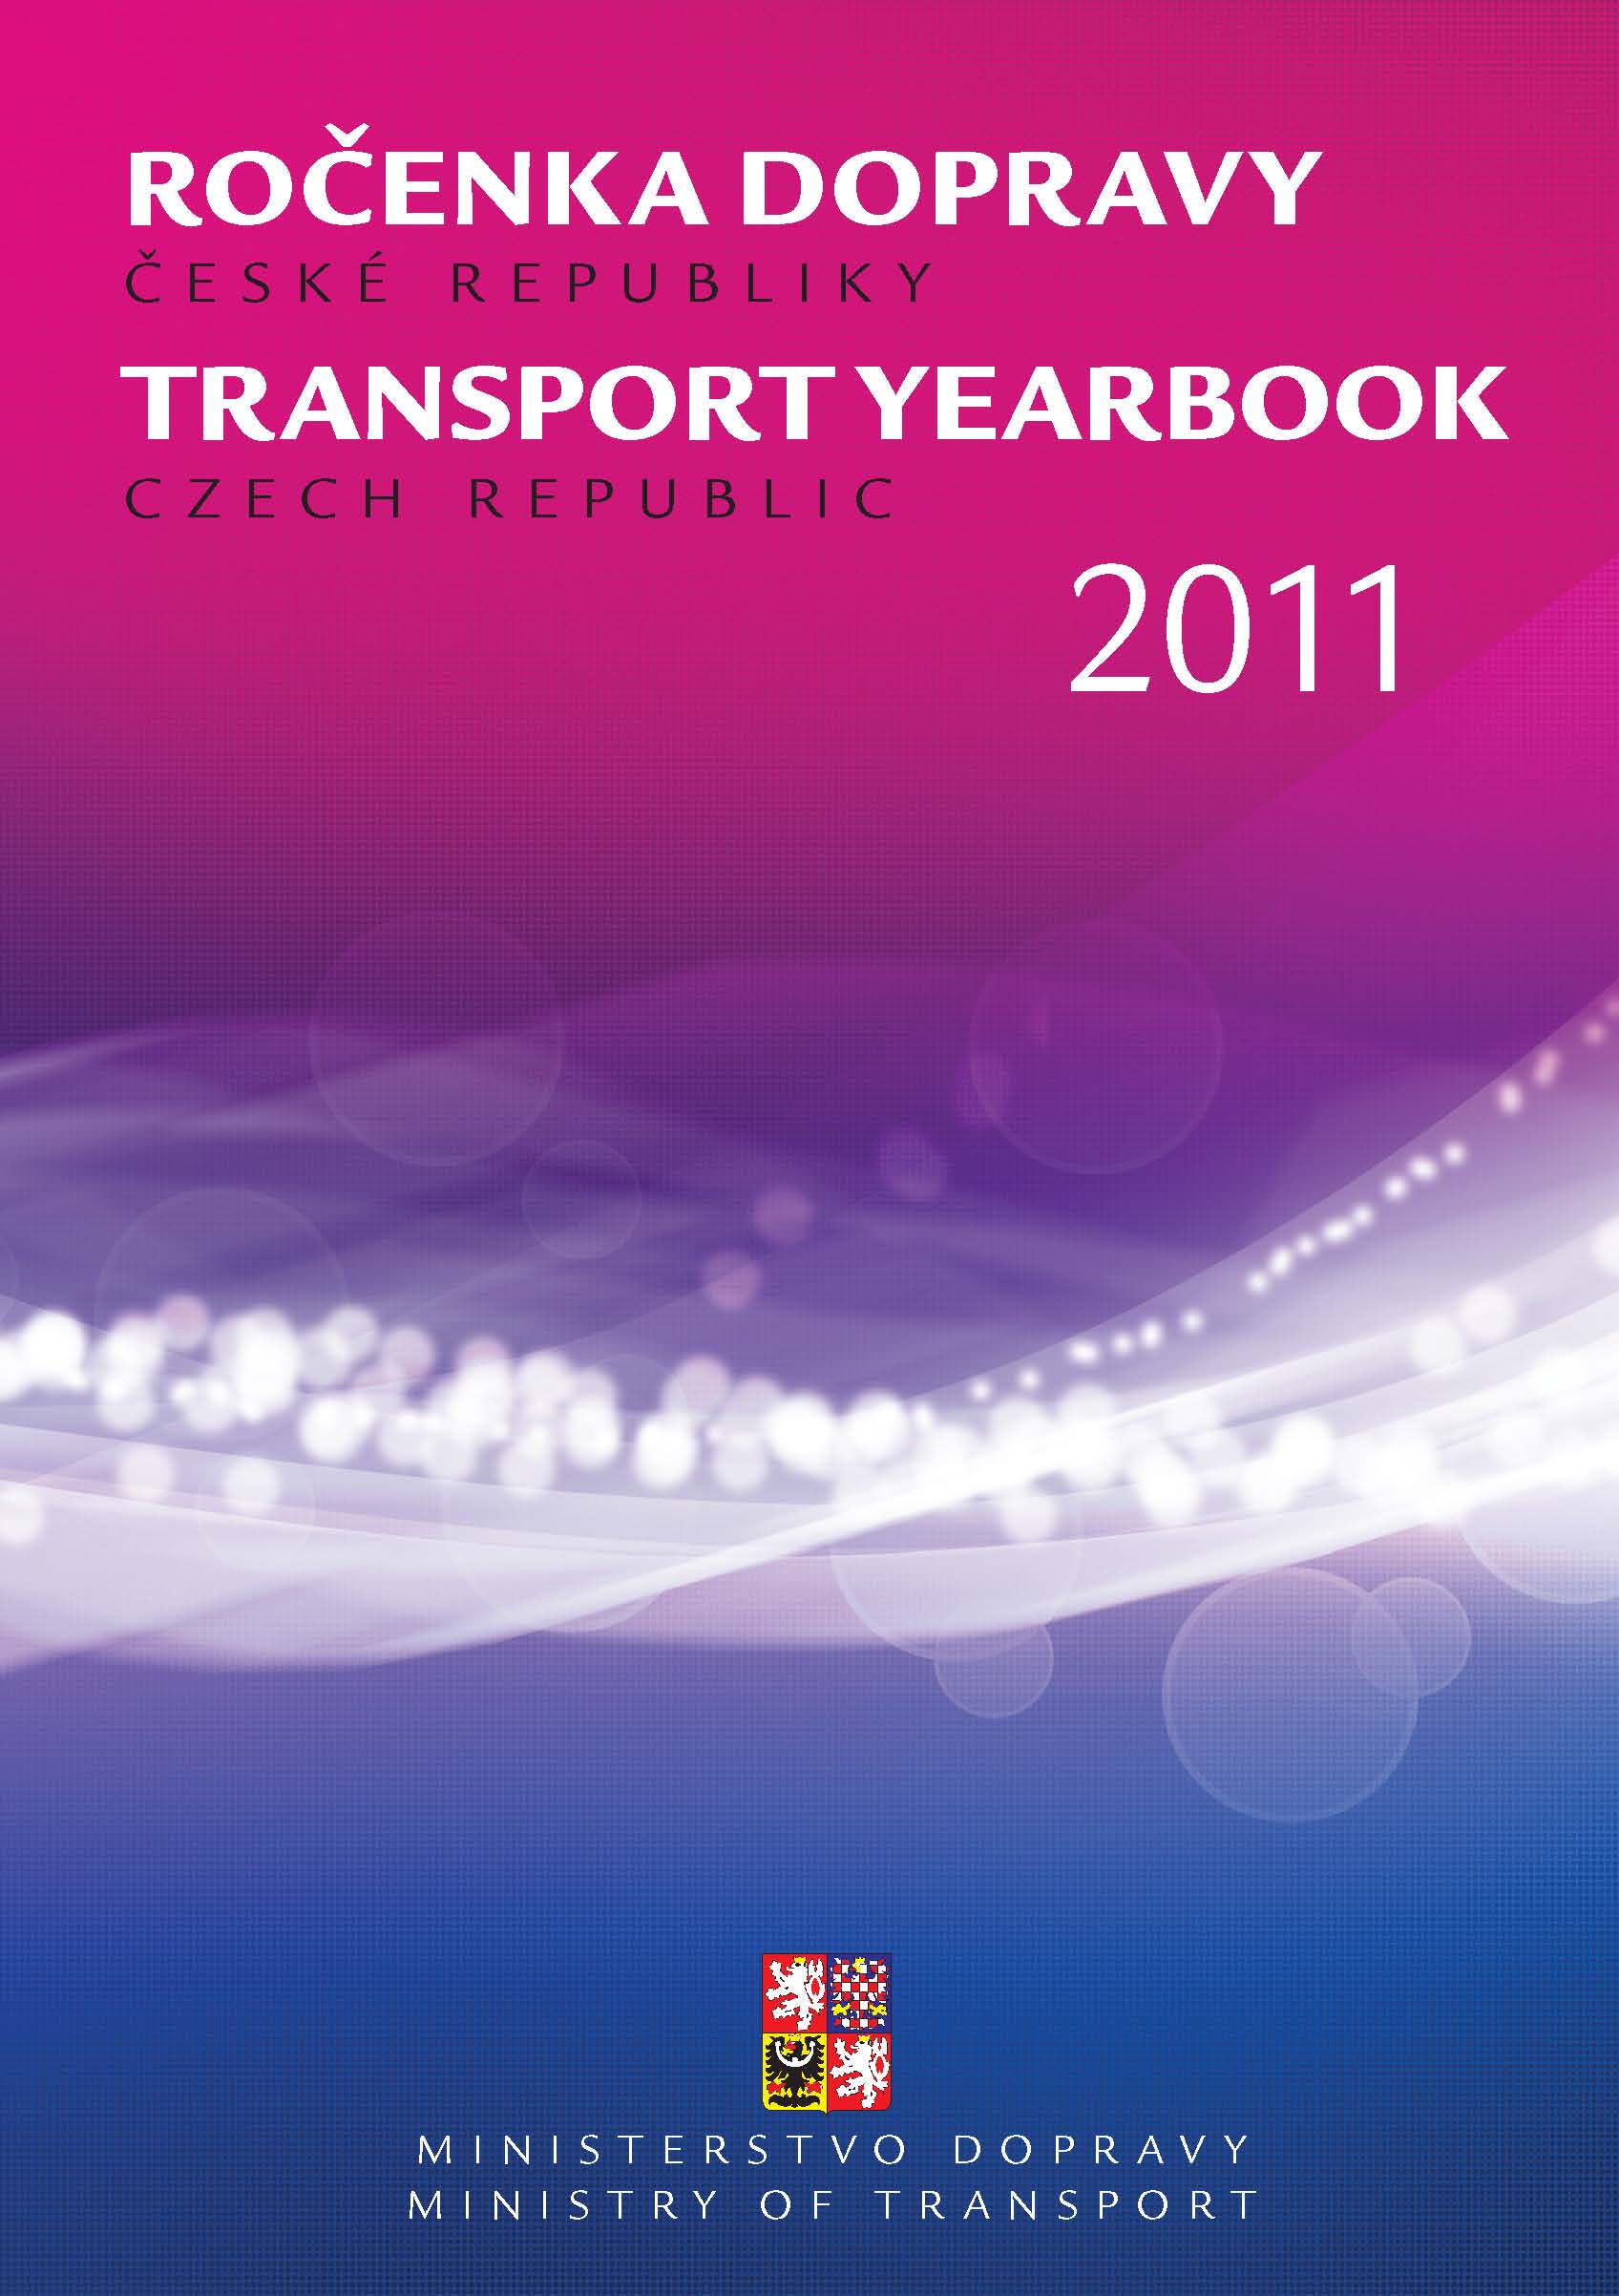 Titulní strana Ročenky dopravy 2011